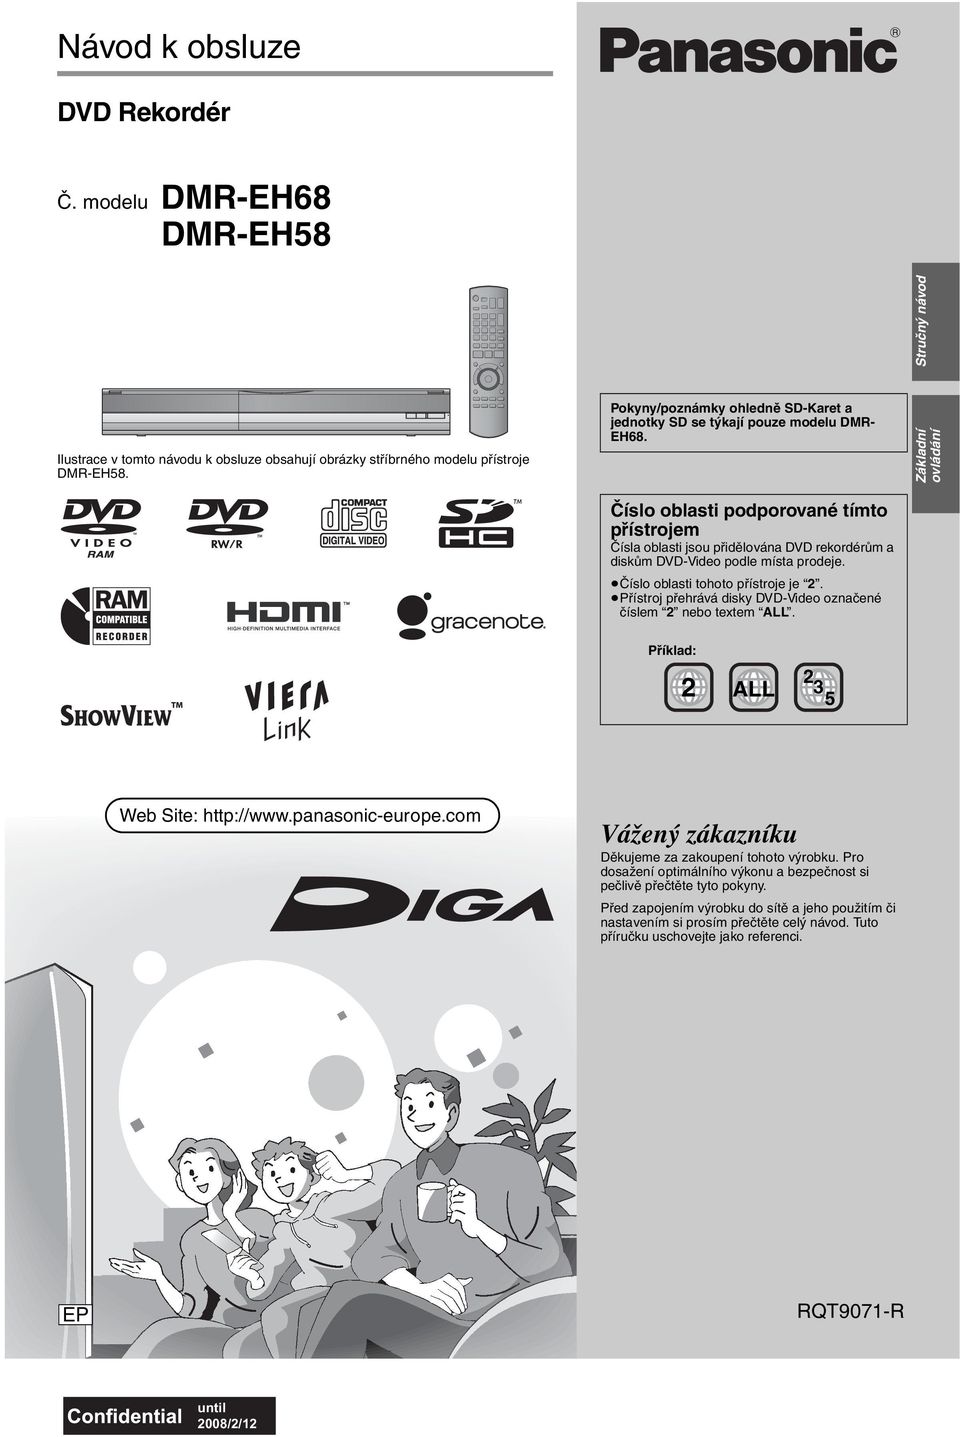 Číslo oblasti podporované tímto přístrojem Čísla oblasti jsou přidělována DVD rekordérům a diskům DVD-Video podle místa prodeje. Číslo oblasti tohoto přístroje je 2.